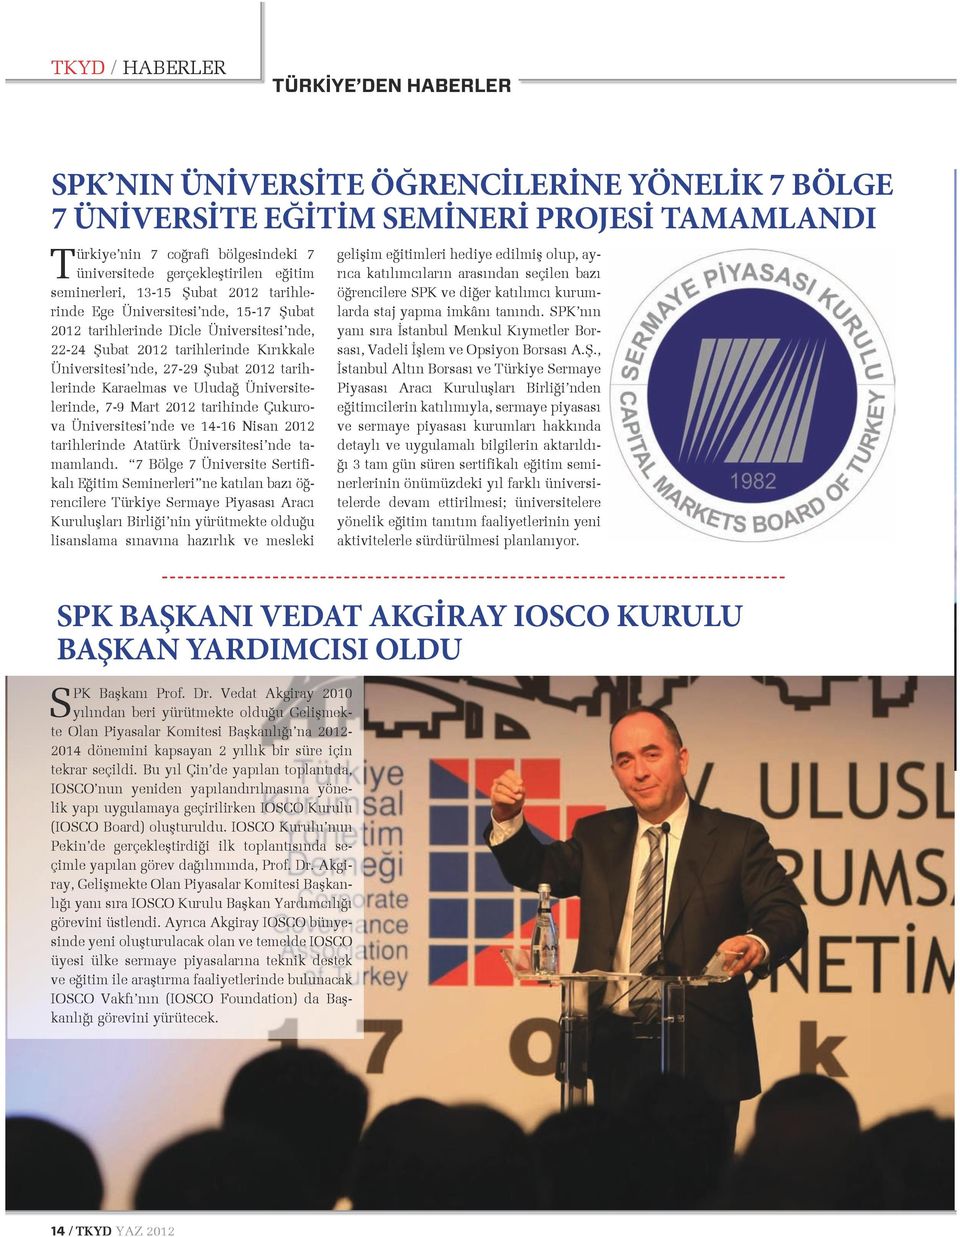 nde, 27-29 Şubat 2012 tarihlerinde Karaelmas ve Uludağ Üniversitelerinde, 7-9 Mart 2012 tarihinde Çukurova Üniversitesi nde ve 14-16 Nisan 2012 tarihlerinde Atatürk Üniversitesi nde tamamlandı.